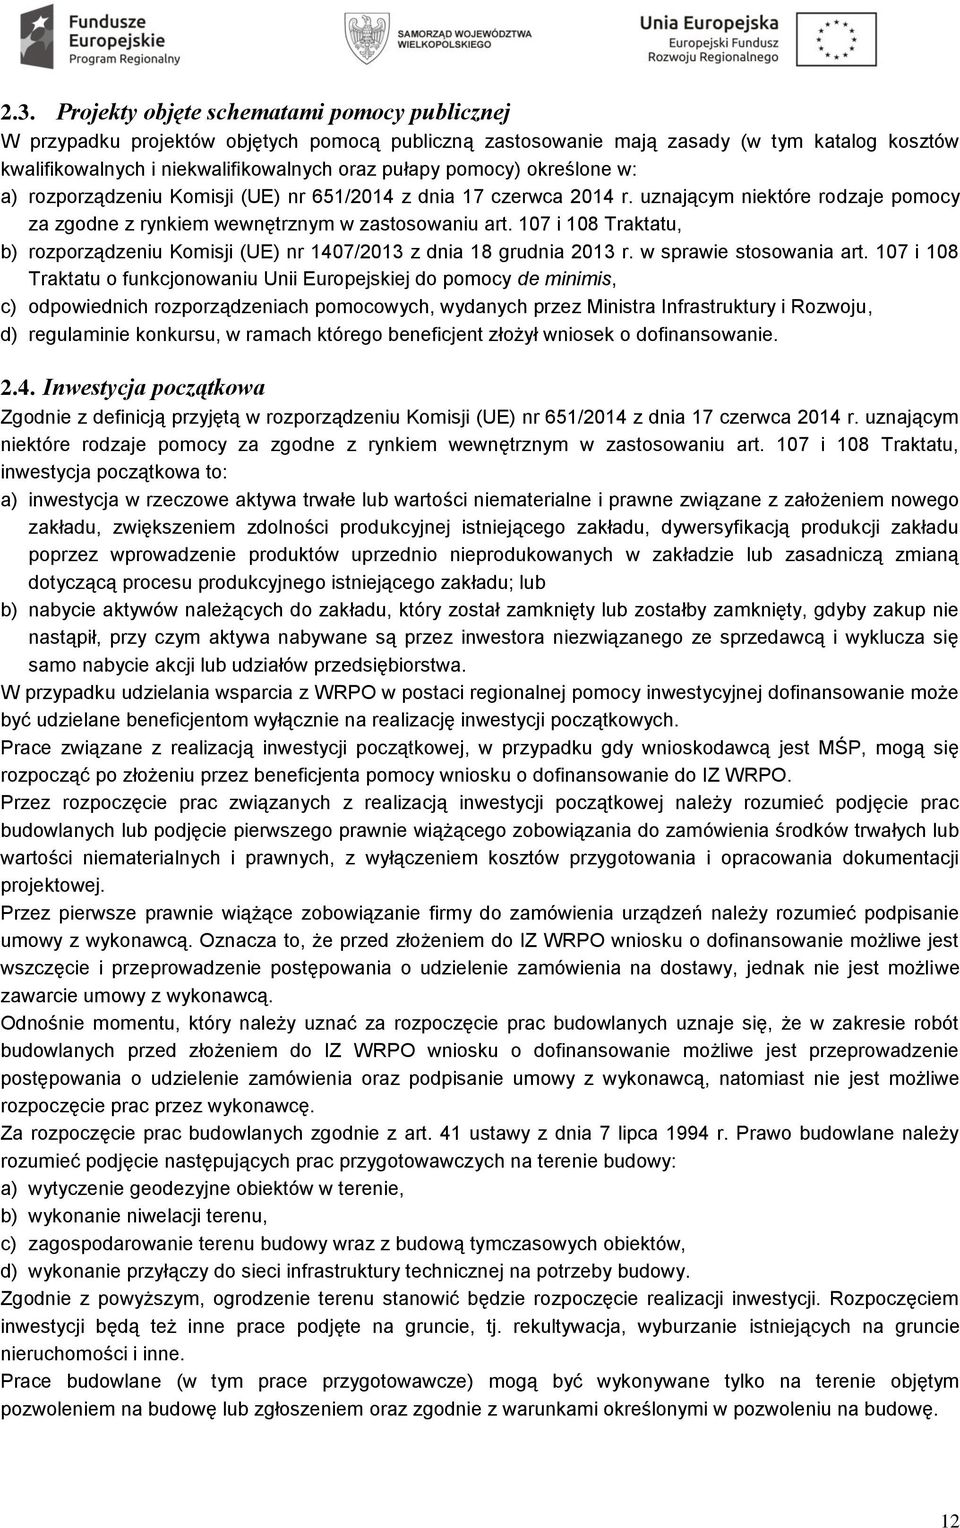 107 i 108 Traktatu, b) rozporządzeniu Komisji (UE) nr 1407/2013 z dnia 18 grudnia 2013 r. w sprawie stosowania art.